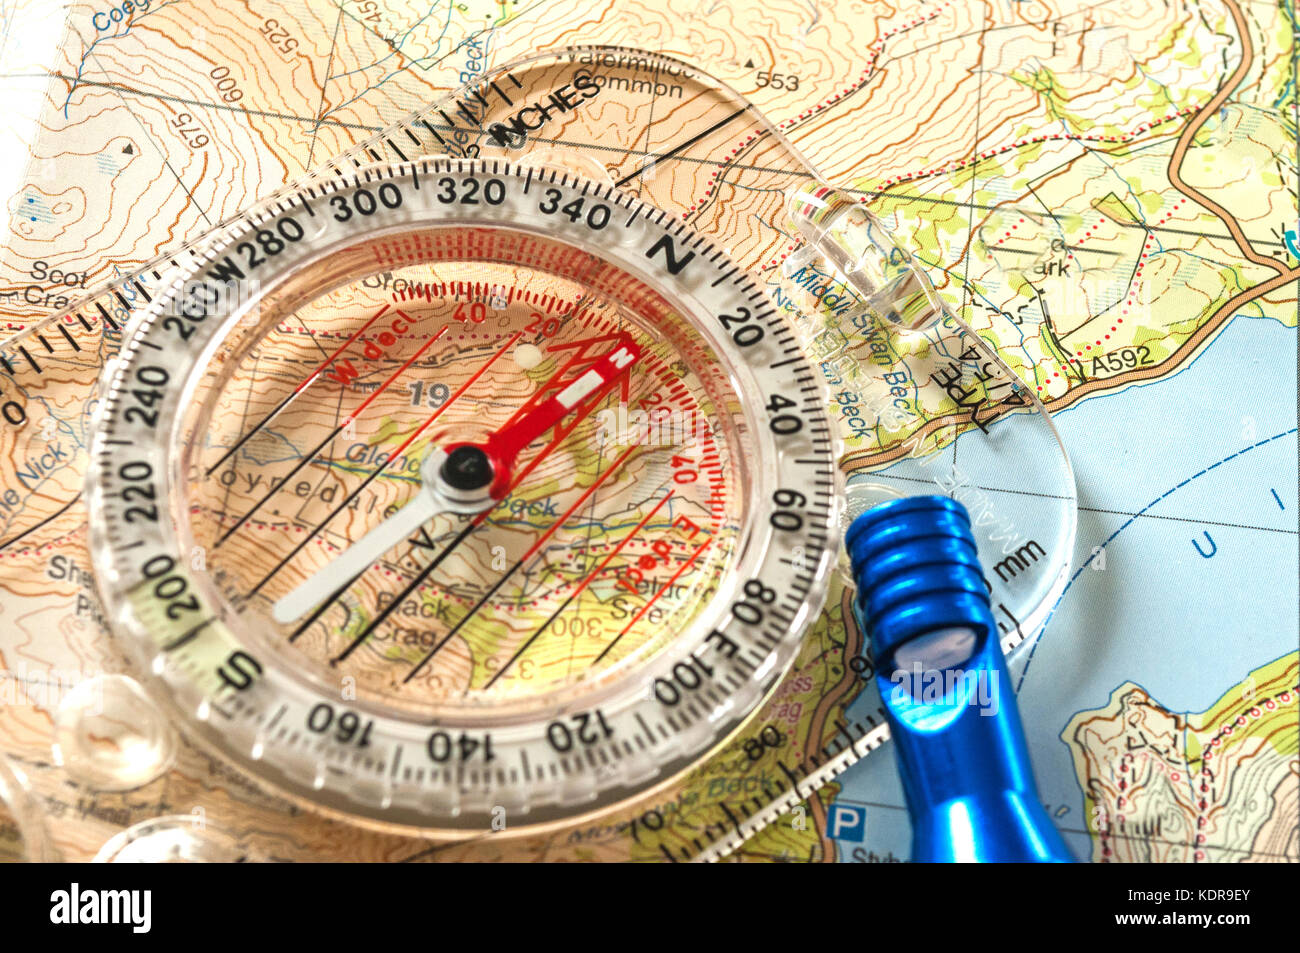 Kompass zeigt Richtung auf topografischer Karte, mit Rettungspfeife, geringe Schärfentiefe Stockfoto